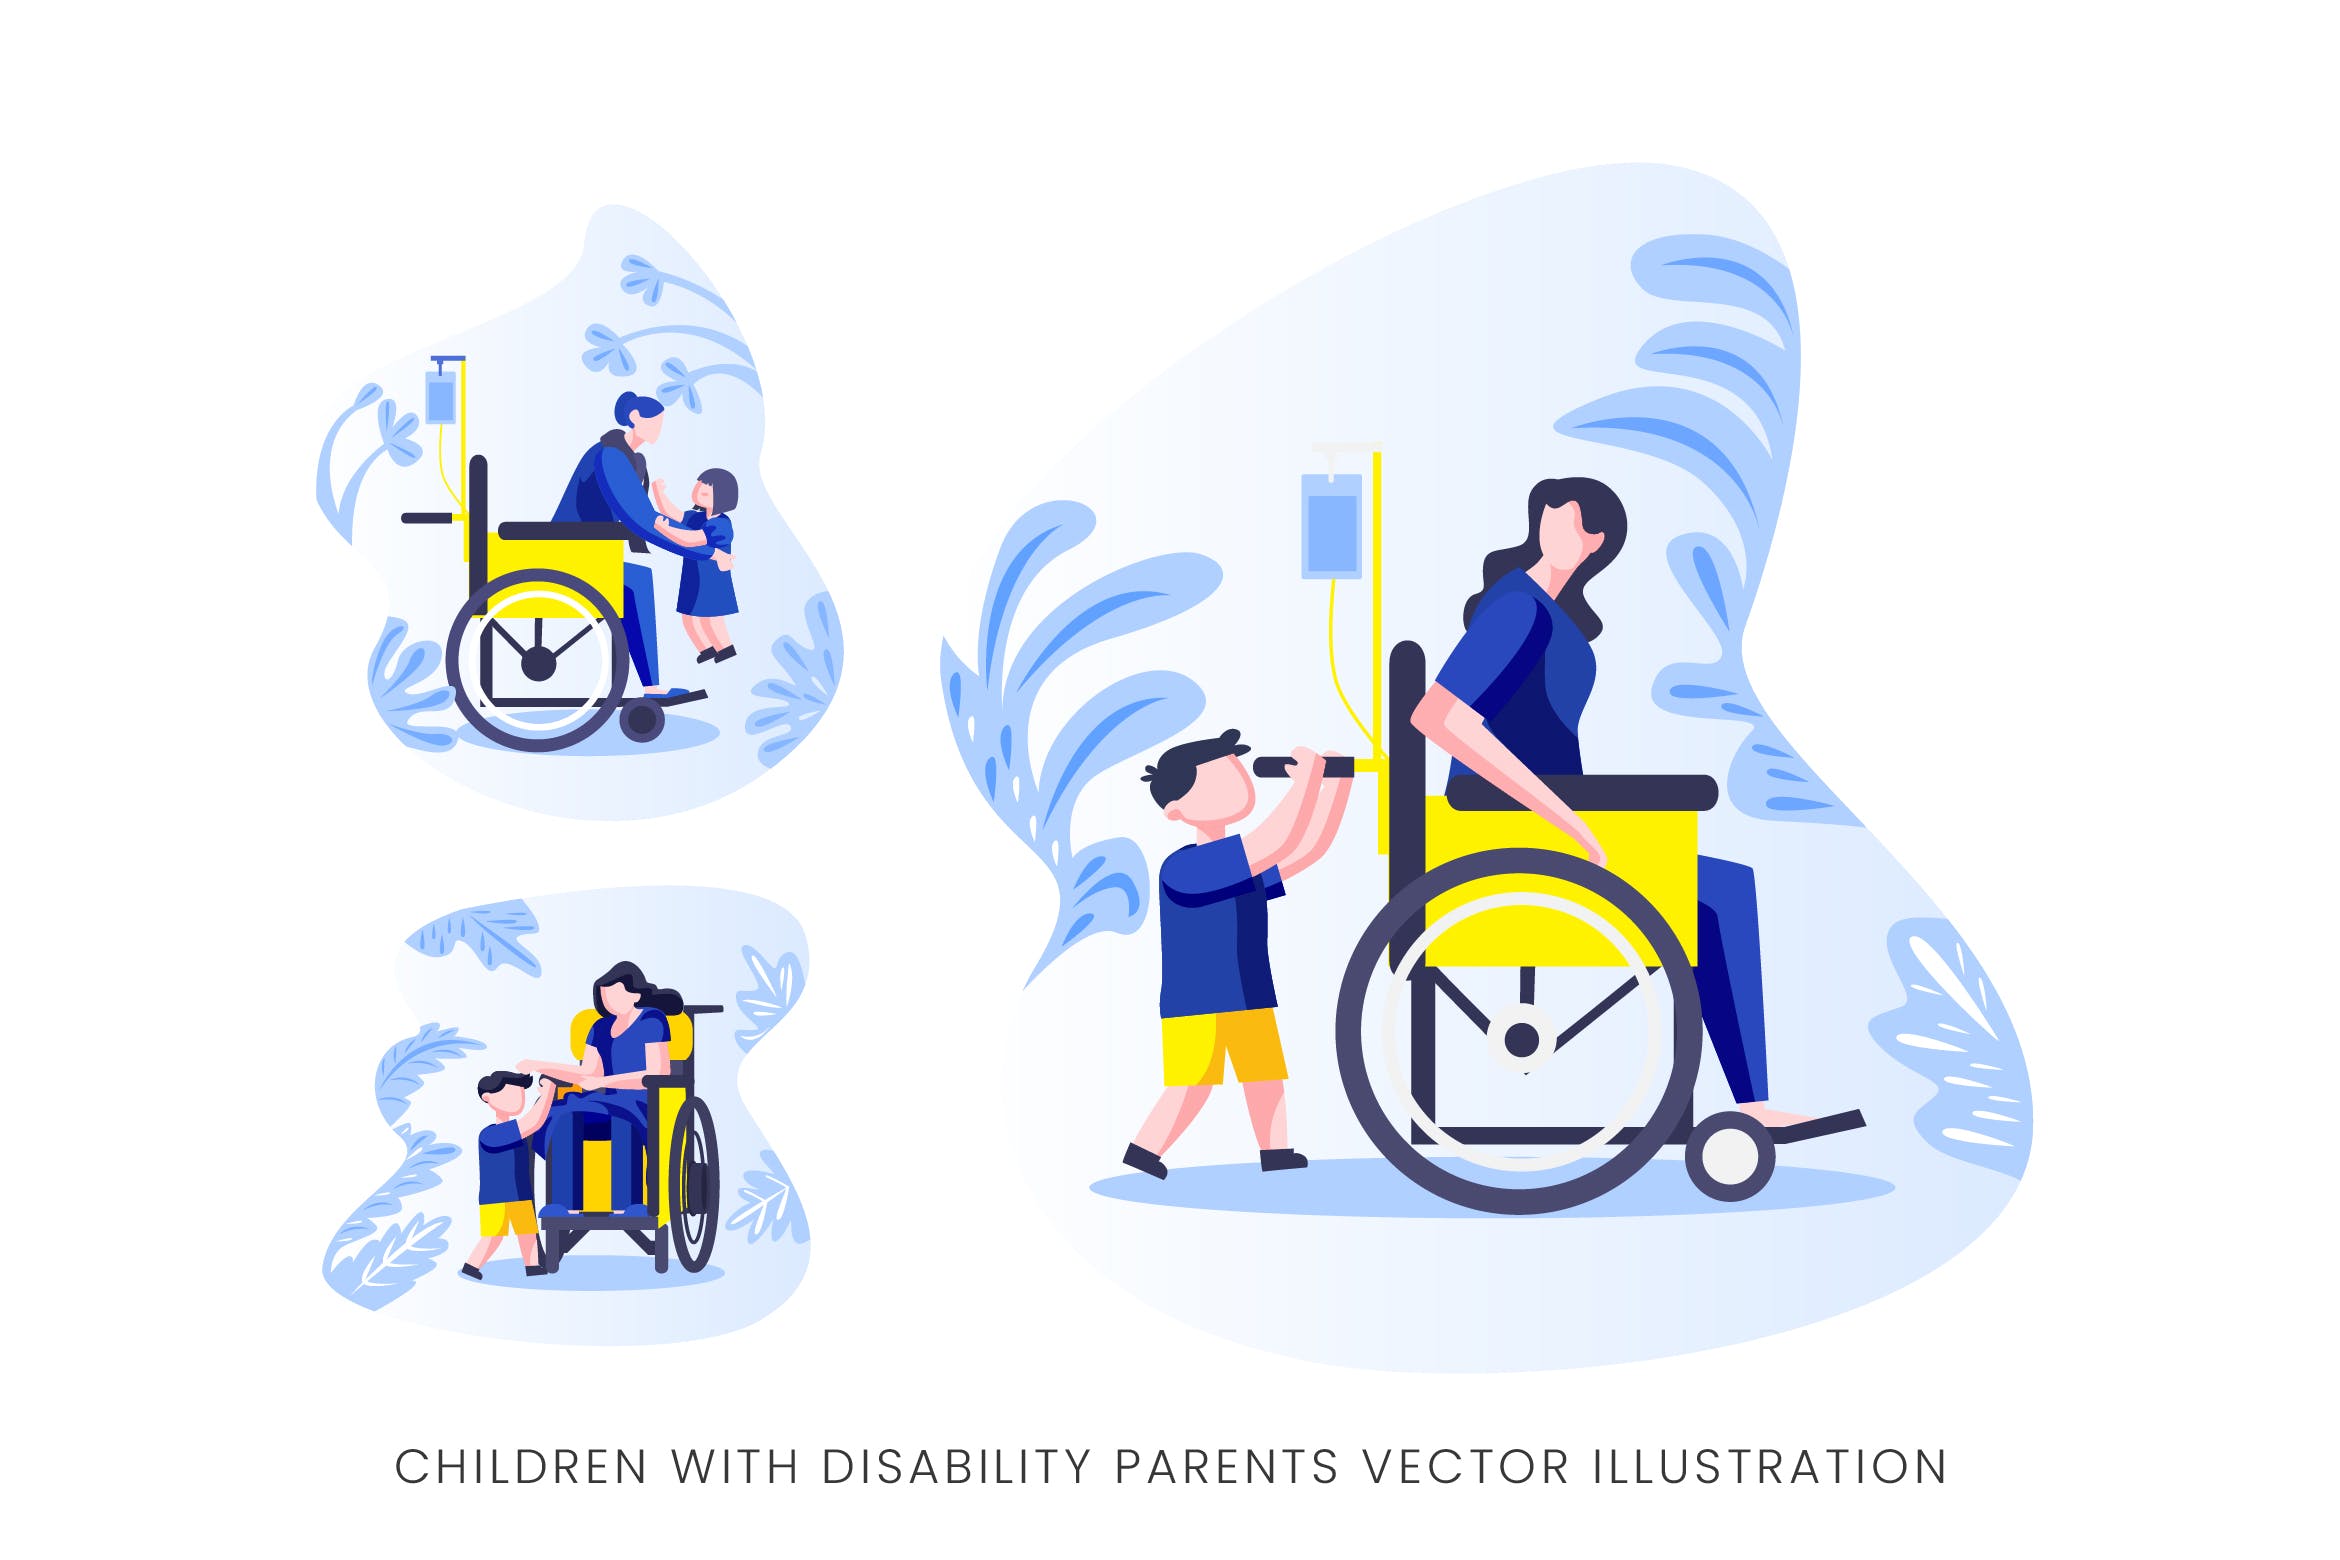 伤残人士与儿童人物形象16图库精选手绘插画矢量素材 Children With Disability Parents Vector Character插图